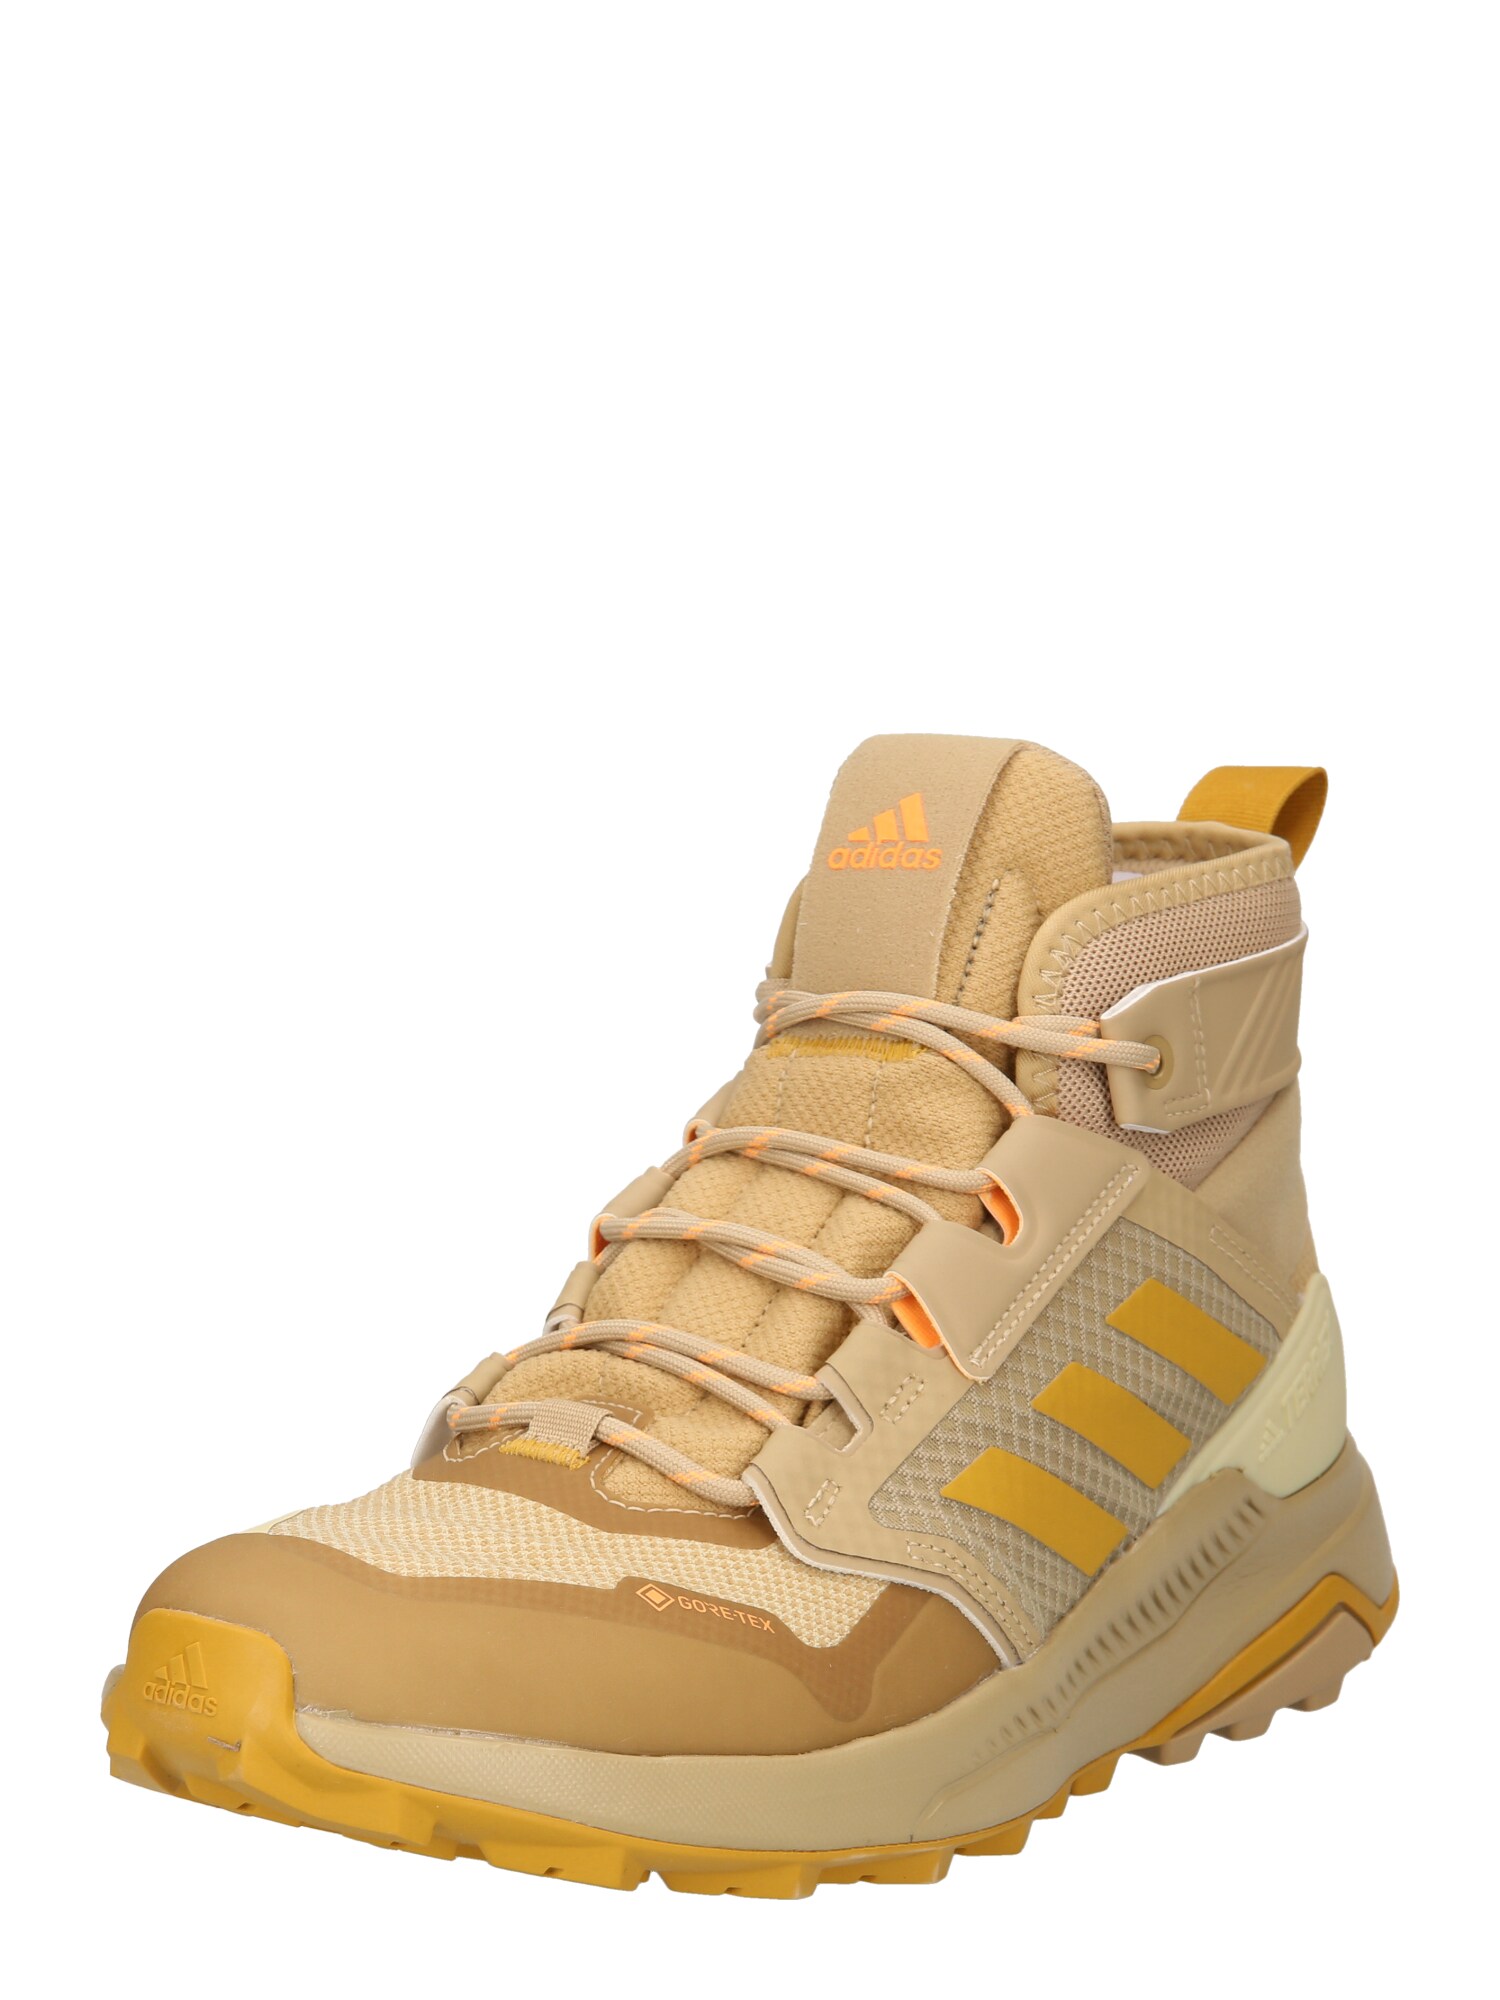 adidas Terrex Auliniai batai tamsi smėlio / persikų spalva / pastelinė geltona